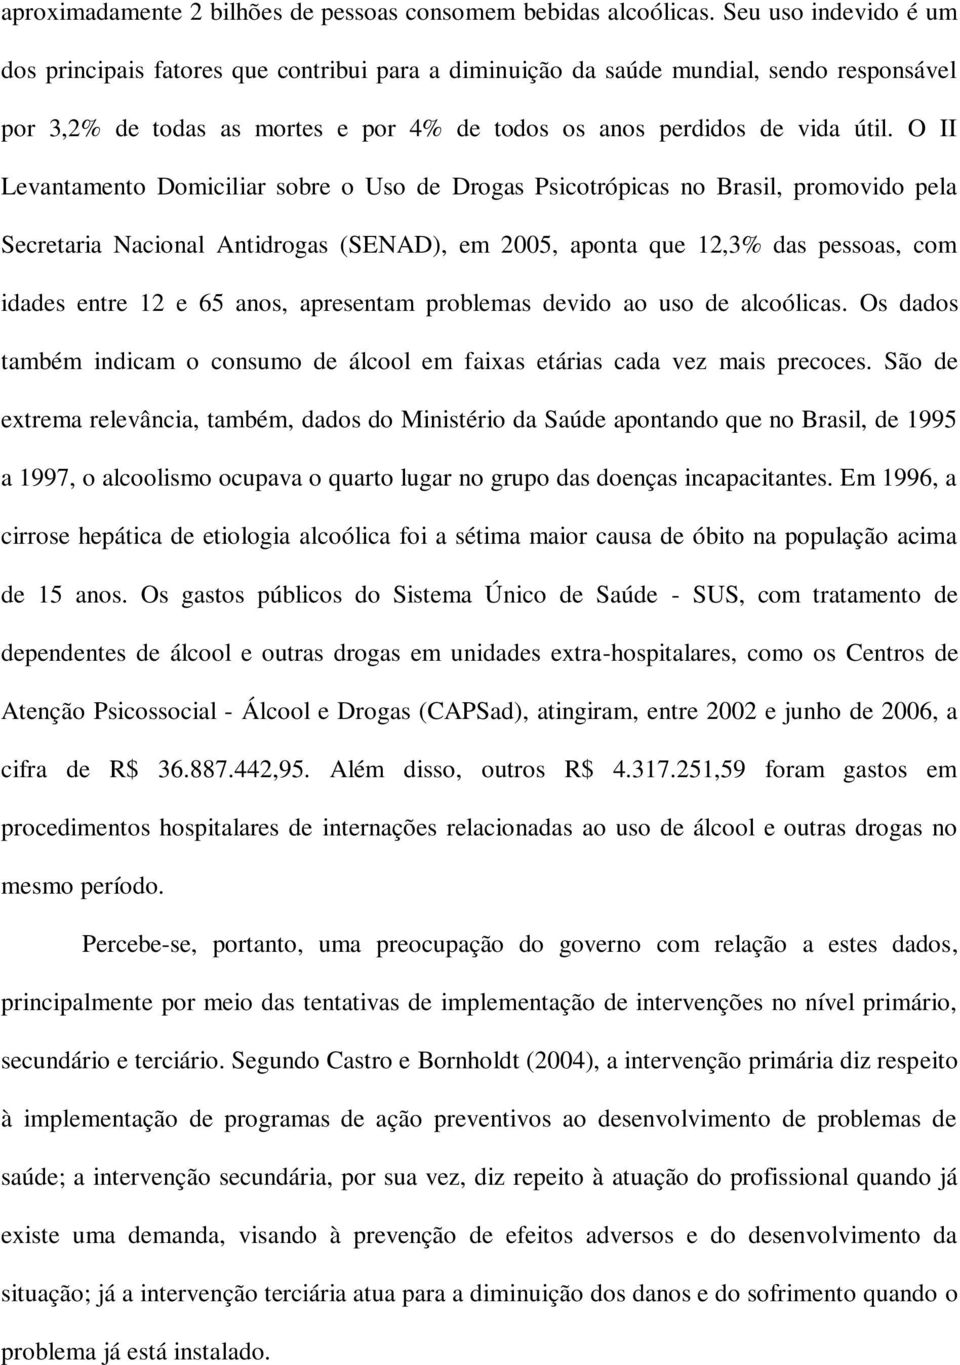 O II Levantamento Domiciliar sobre o Uso de Drogas Psicotrópicas no Brasil, promovido pela Secretaria Nacional Antidrogas (SENAD), em 2005, aponta que 12,3% das pessoas, com idades entre 12 e 65